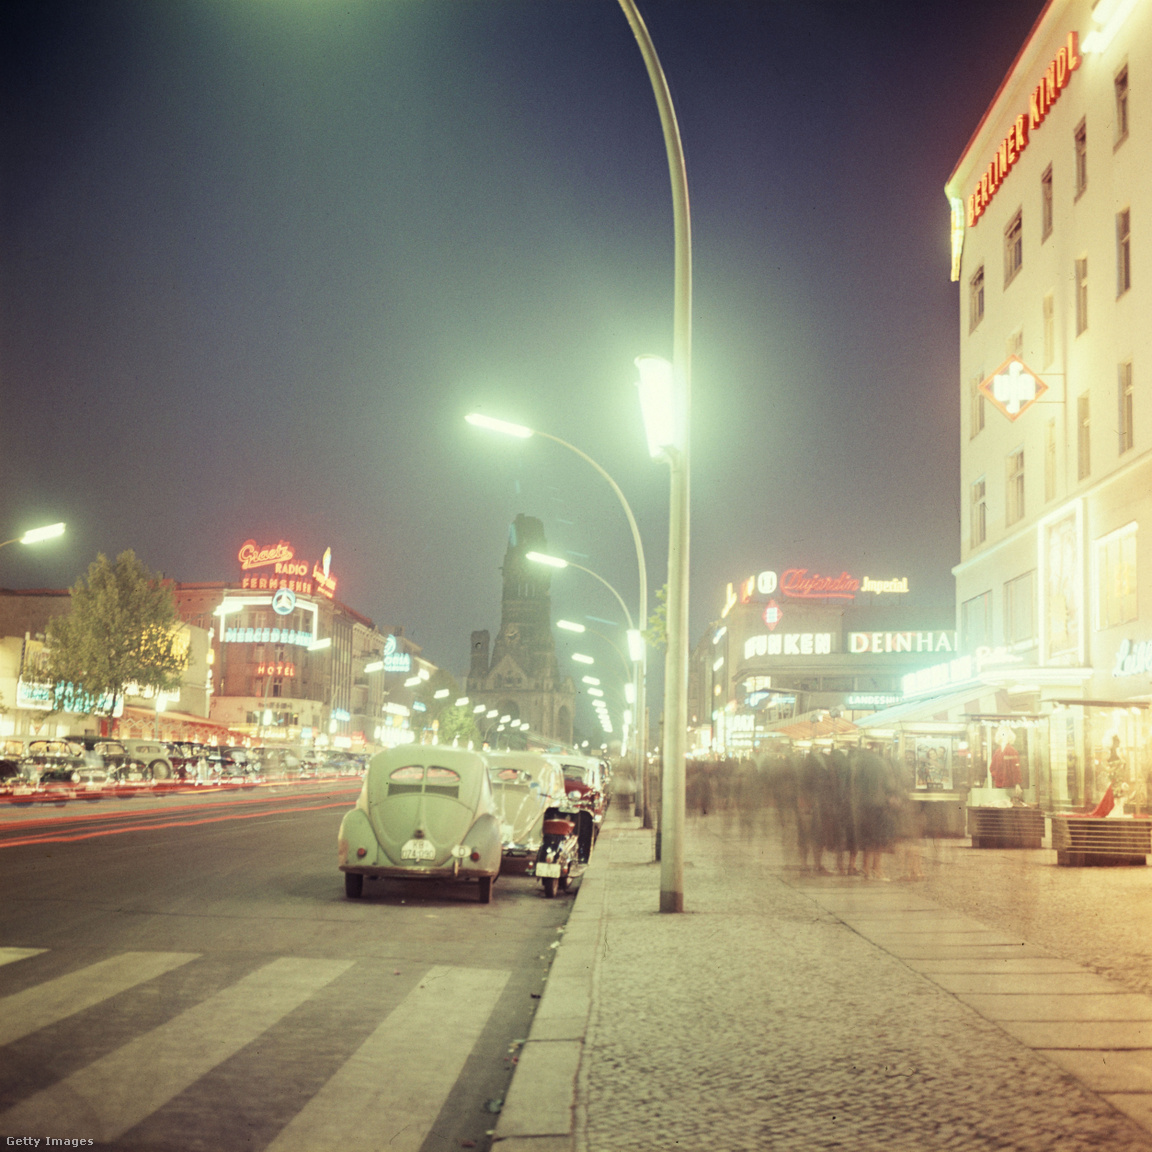 Németország, Berlin, 1960 körül. Éjszakai utca